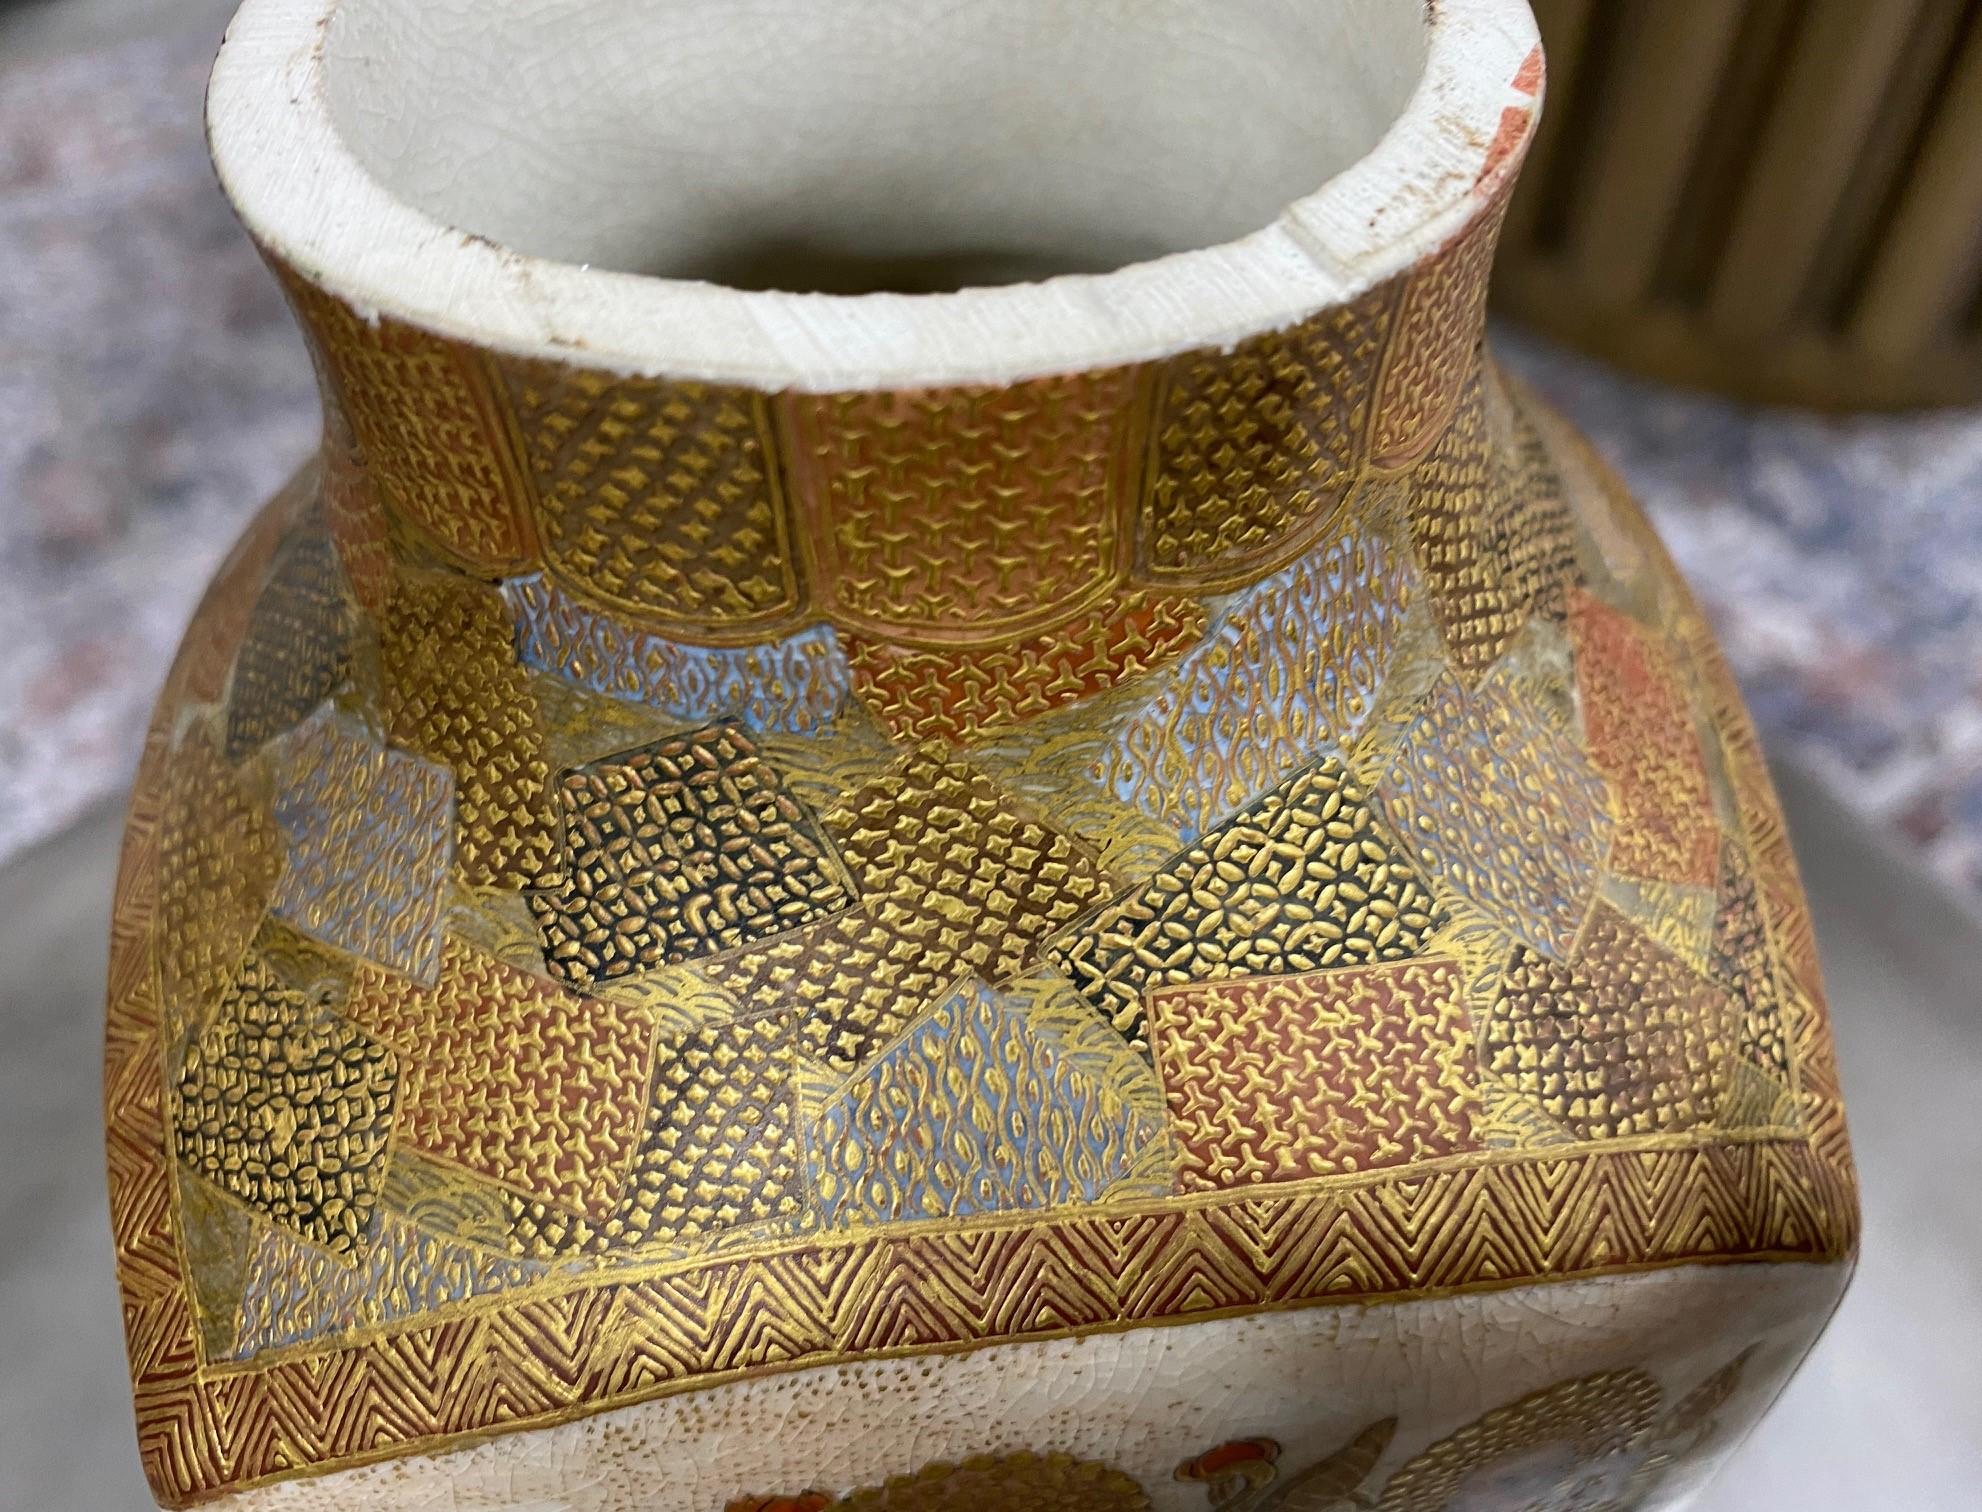 Japanese Antique Satsuma Pottery Buddhist Monks Vase with Shimazu Crest Mark For Sale 5